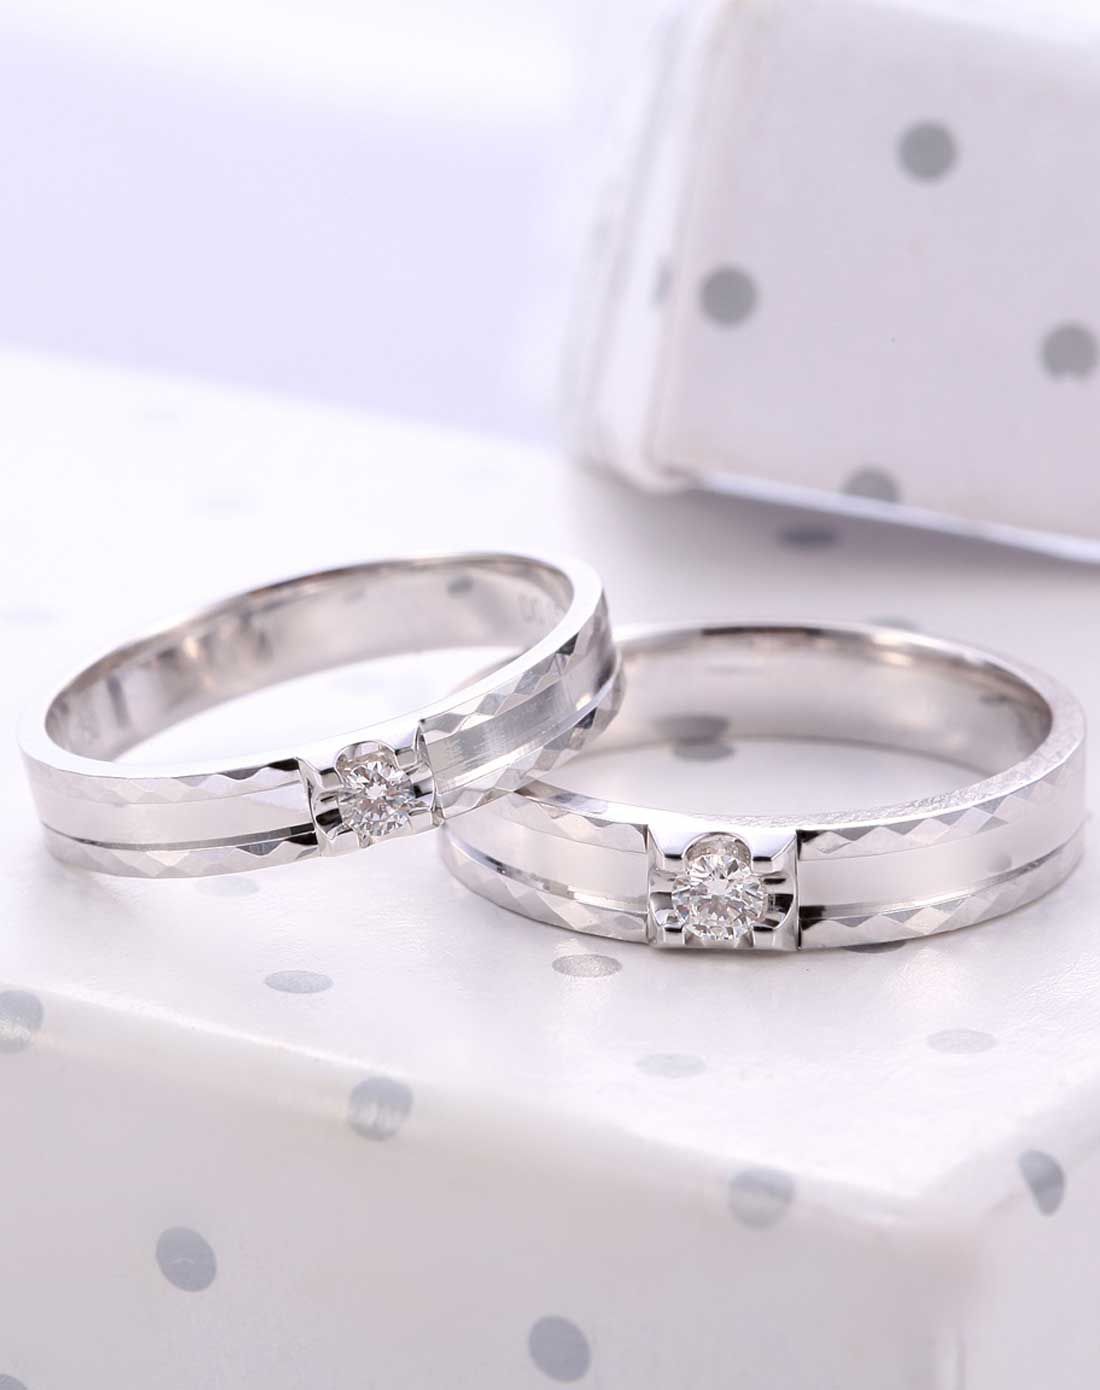 婚戒买钻石好还是黄金好？两者哪个更好呢？